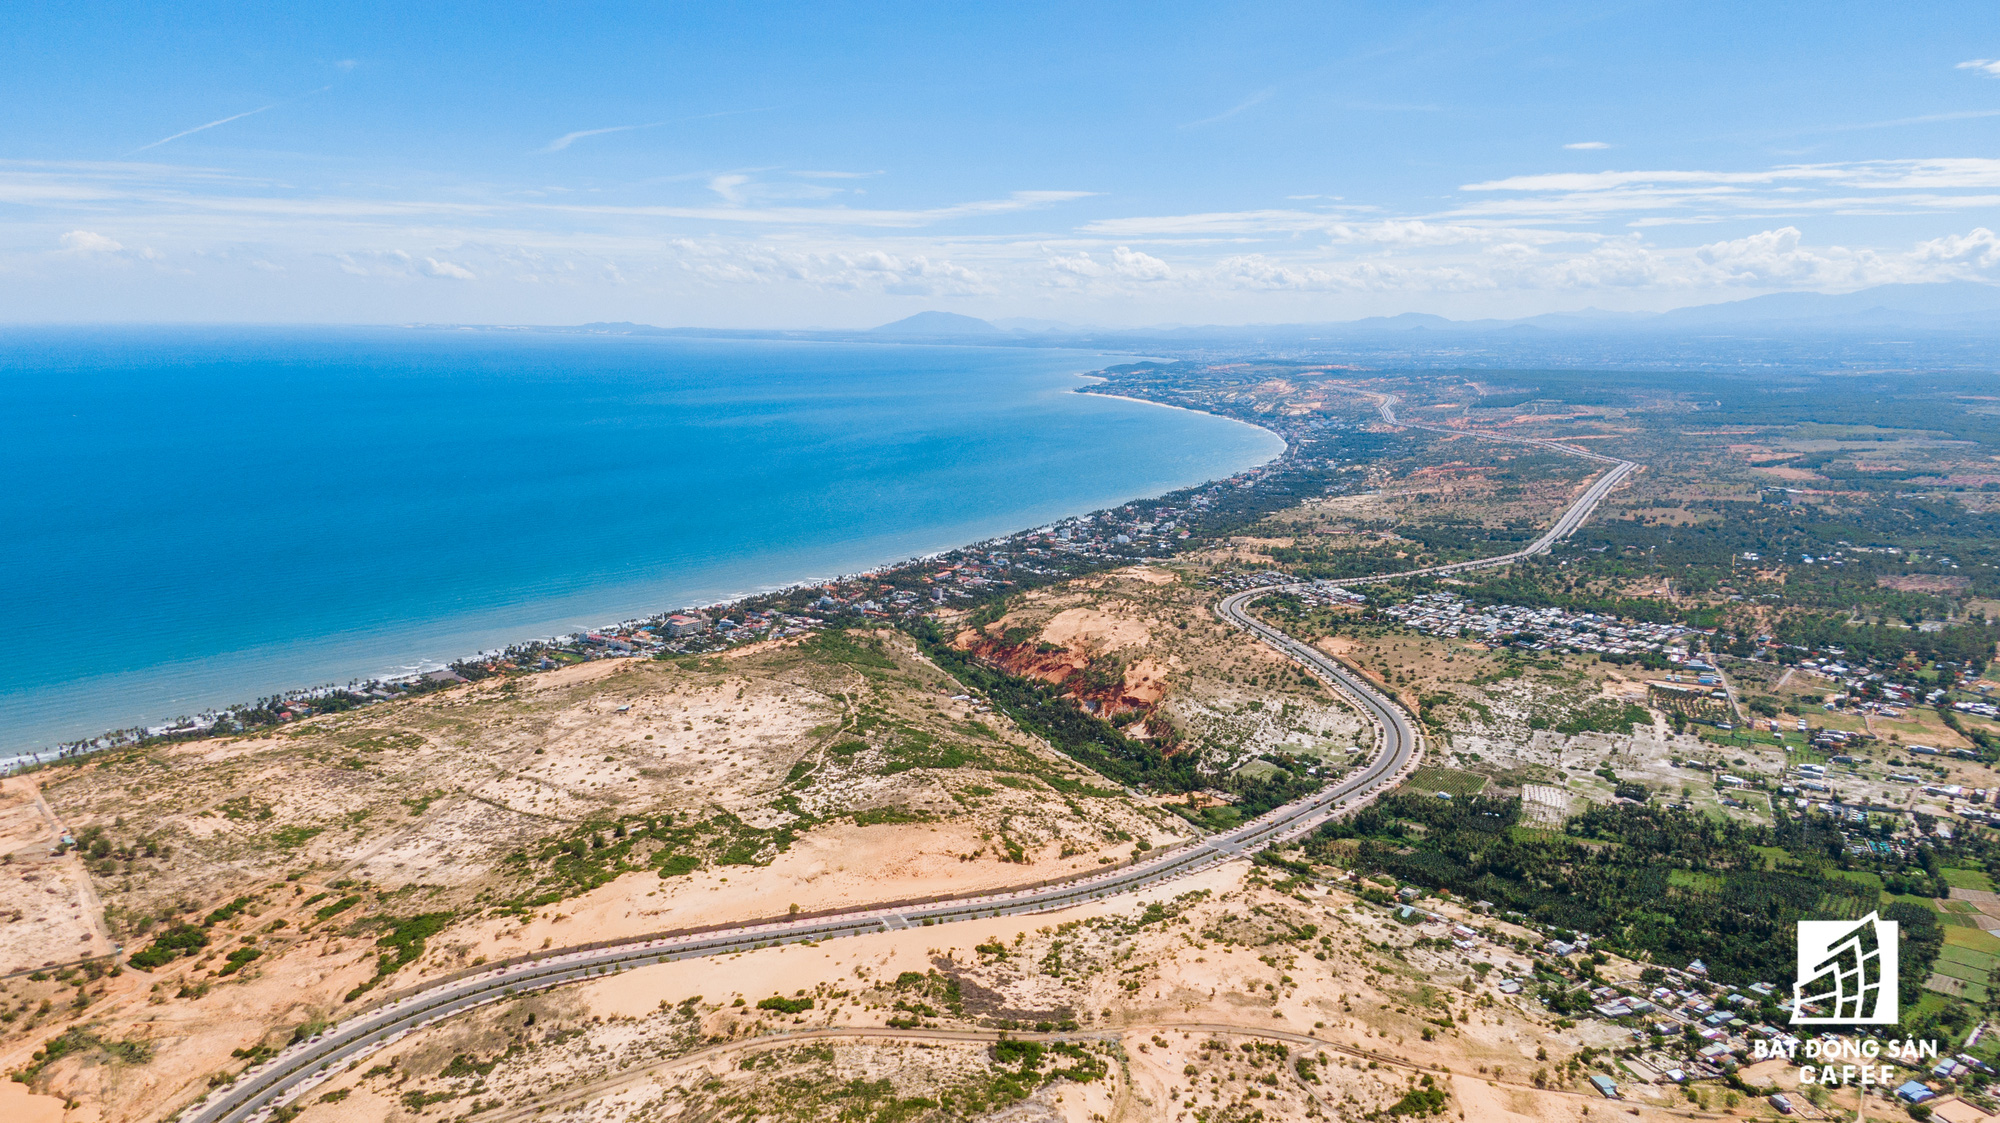 La Gi có vị trí trung tâm của cung đường biển đẹp và lớn bậc nhất Việt Nam